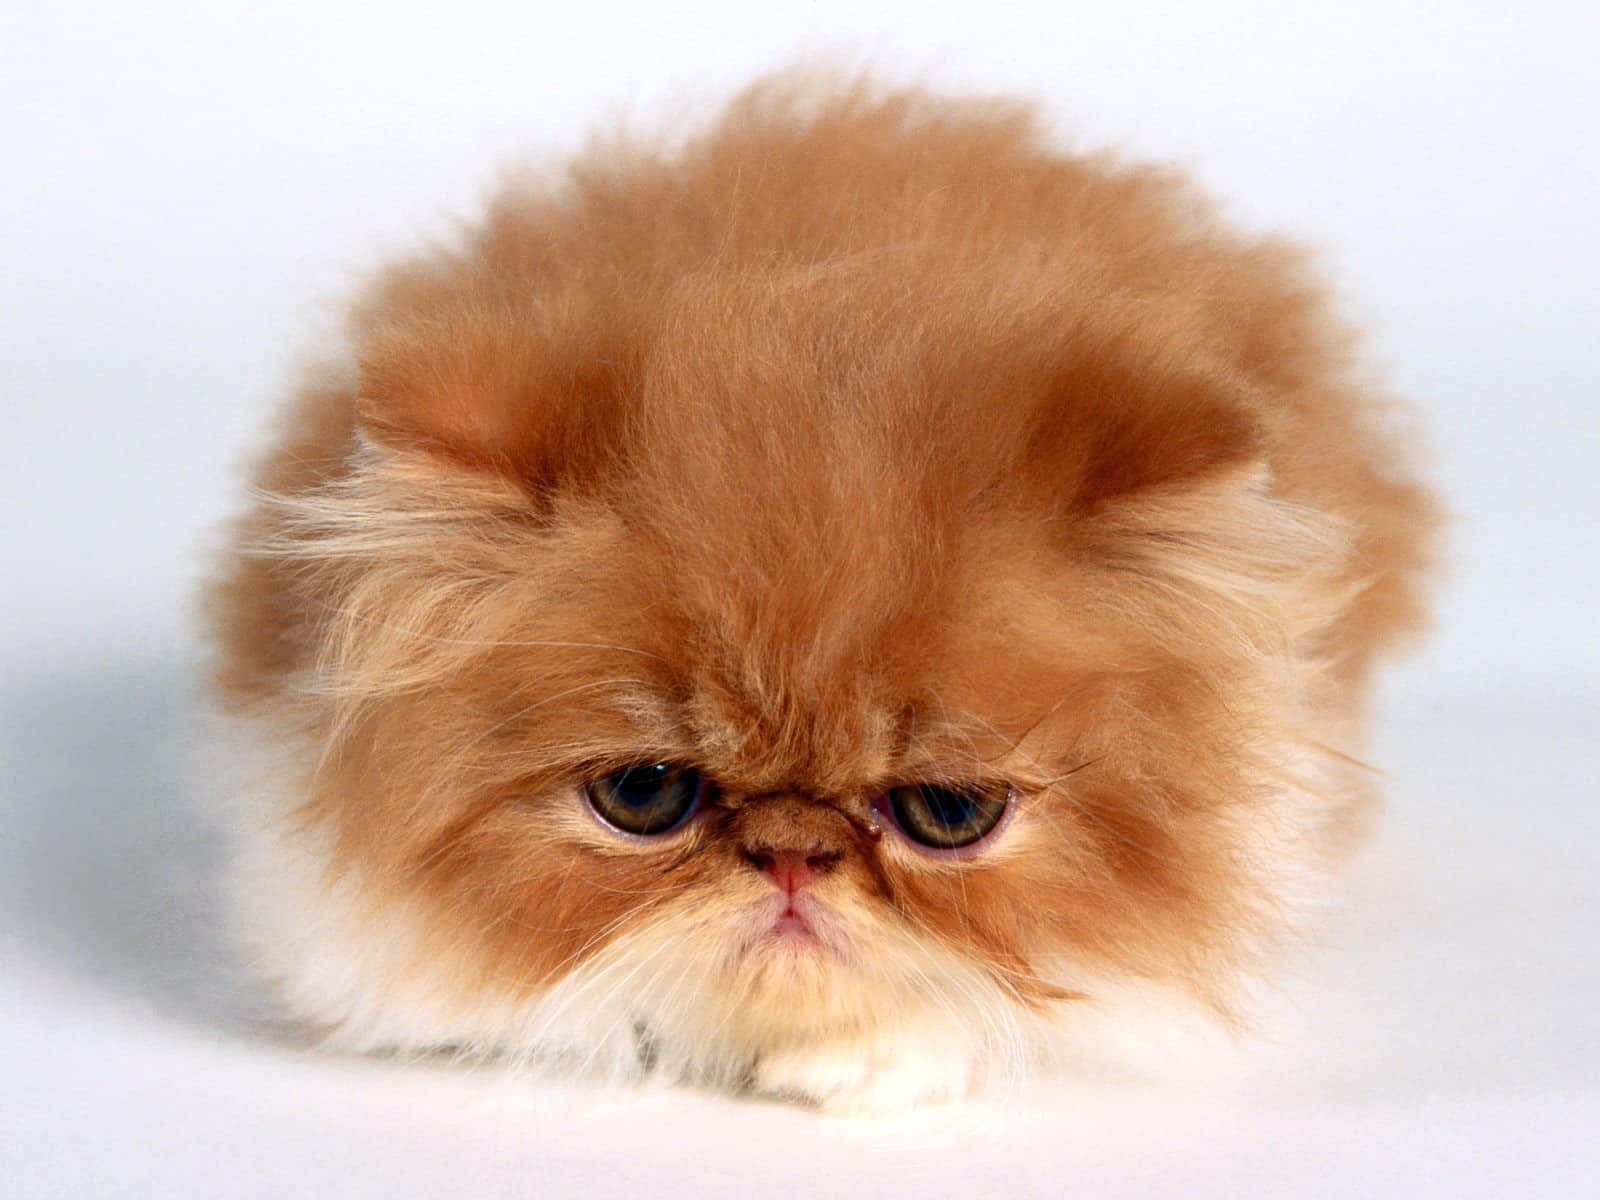 grumpy cat pictures no words